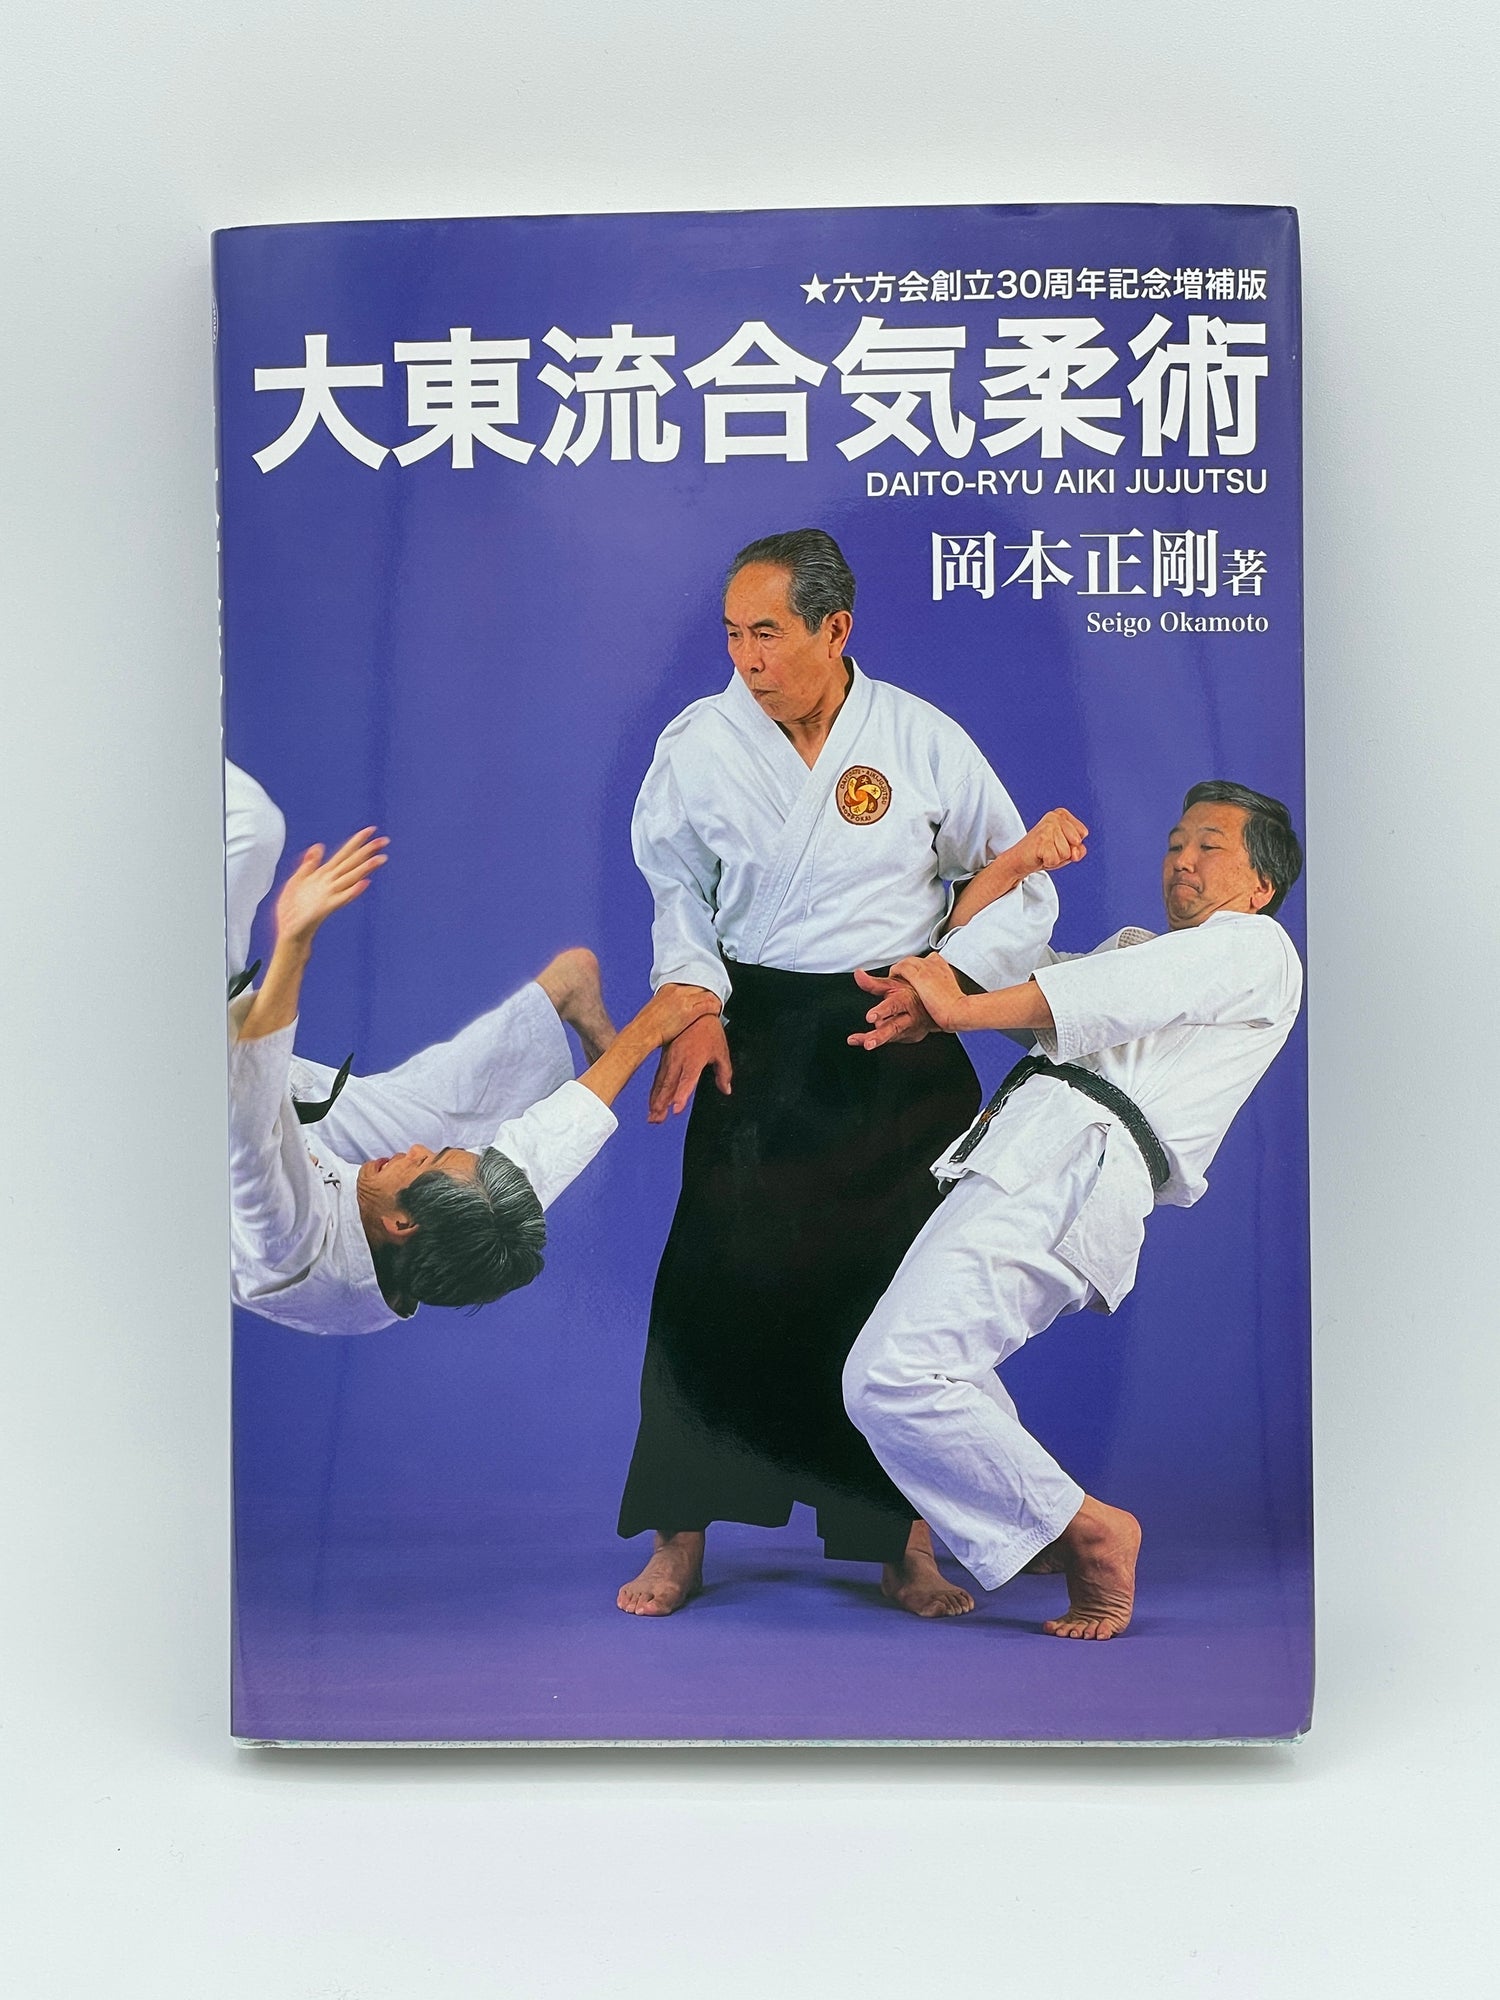 Daito Ryu Aikijujutsu Book by Seigo Okamoto